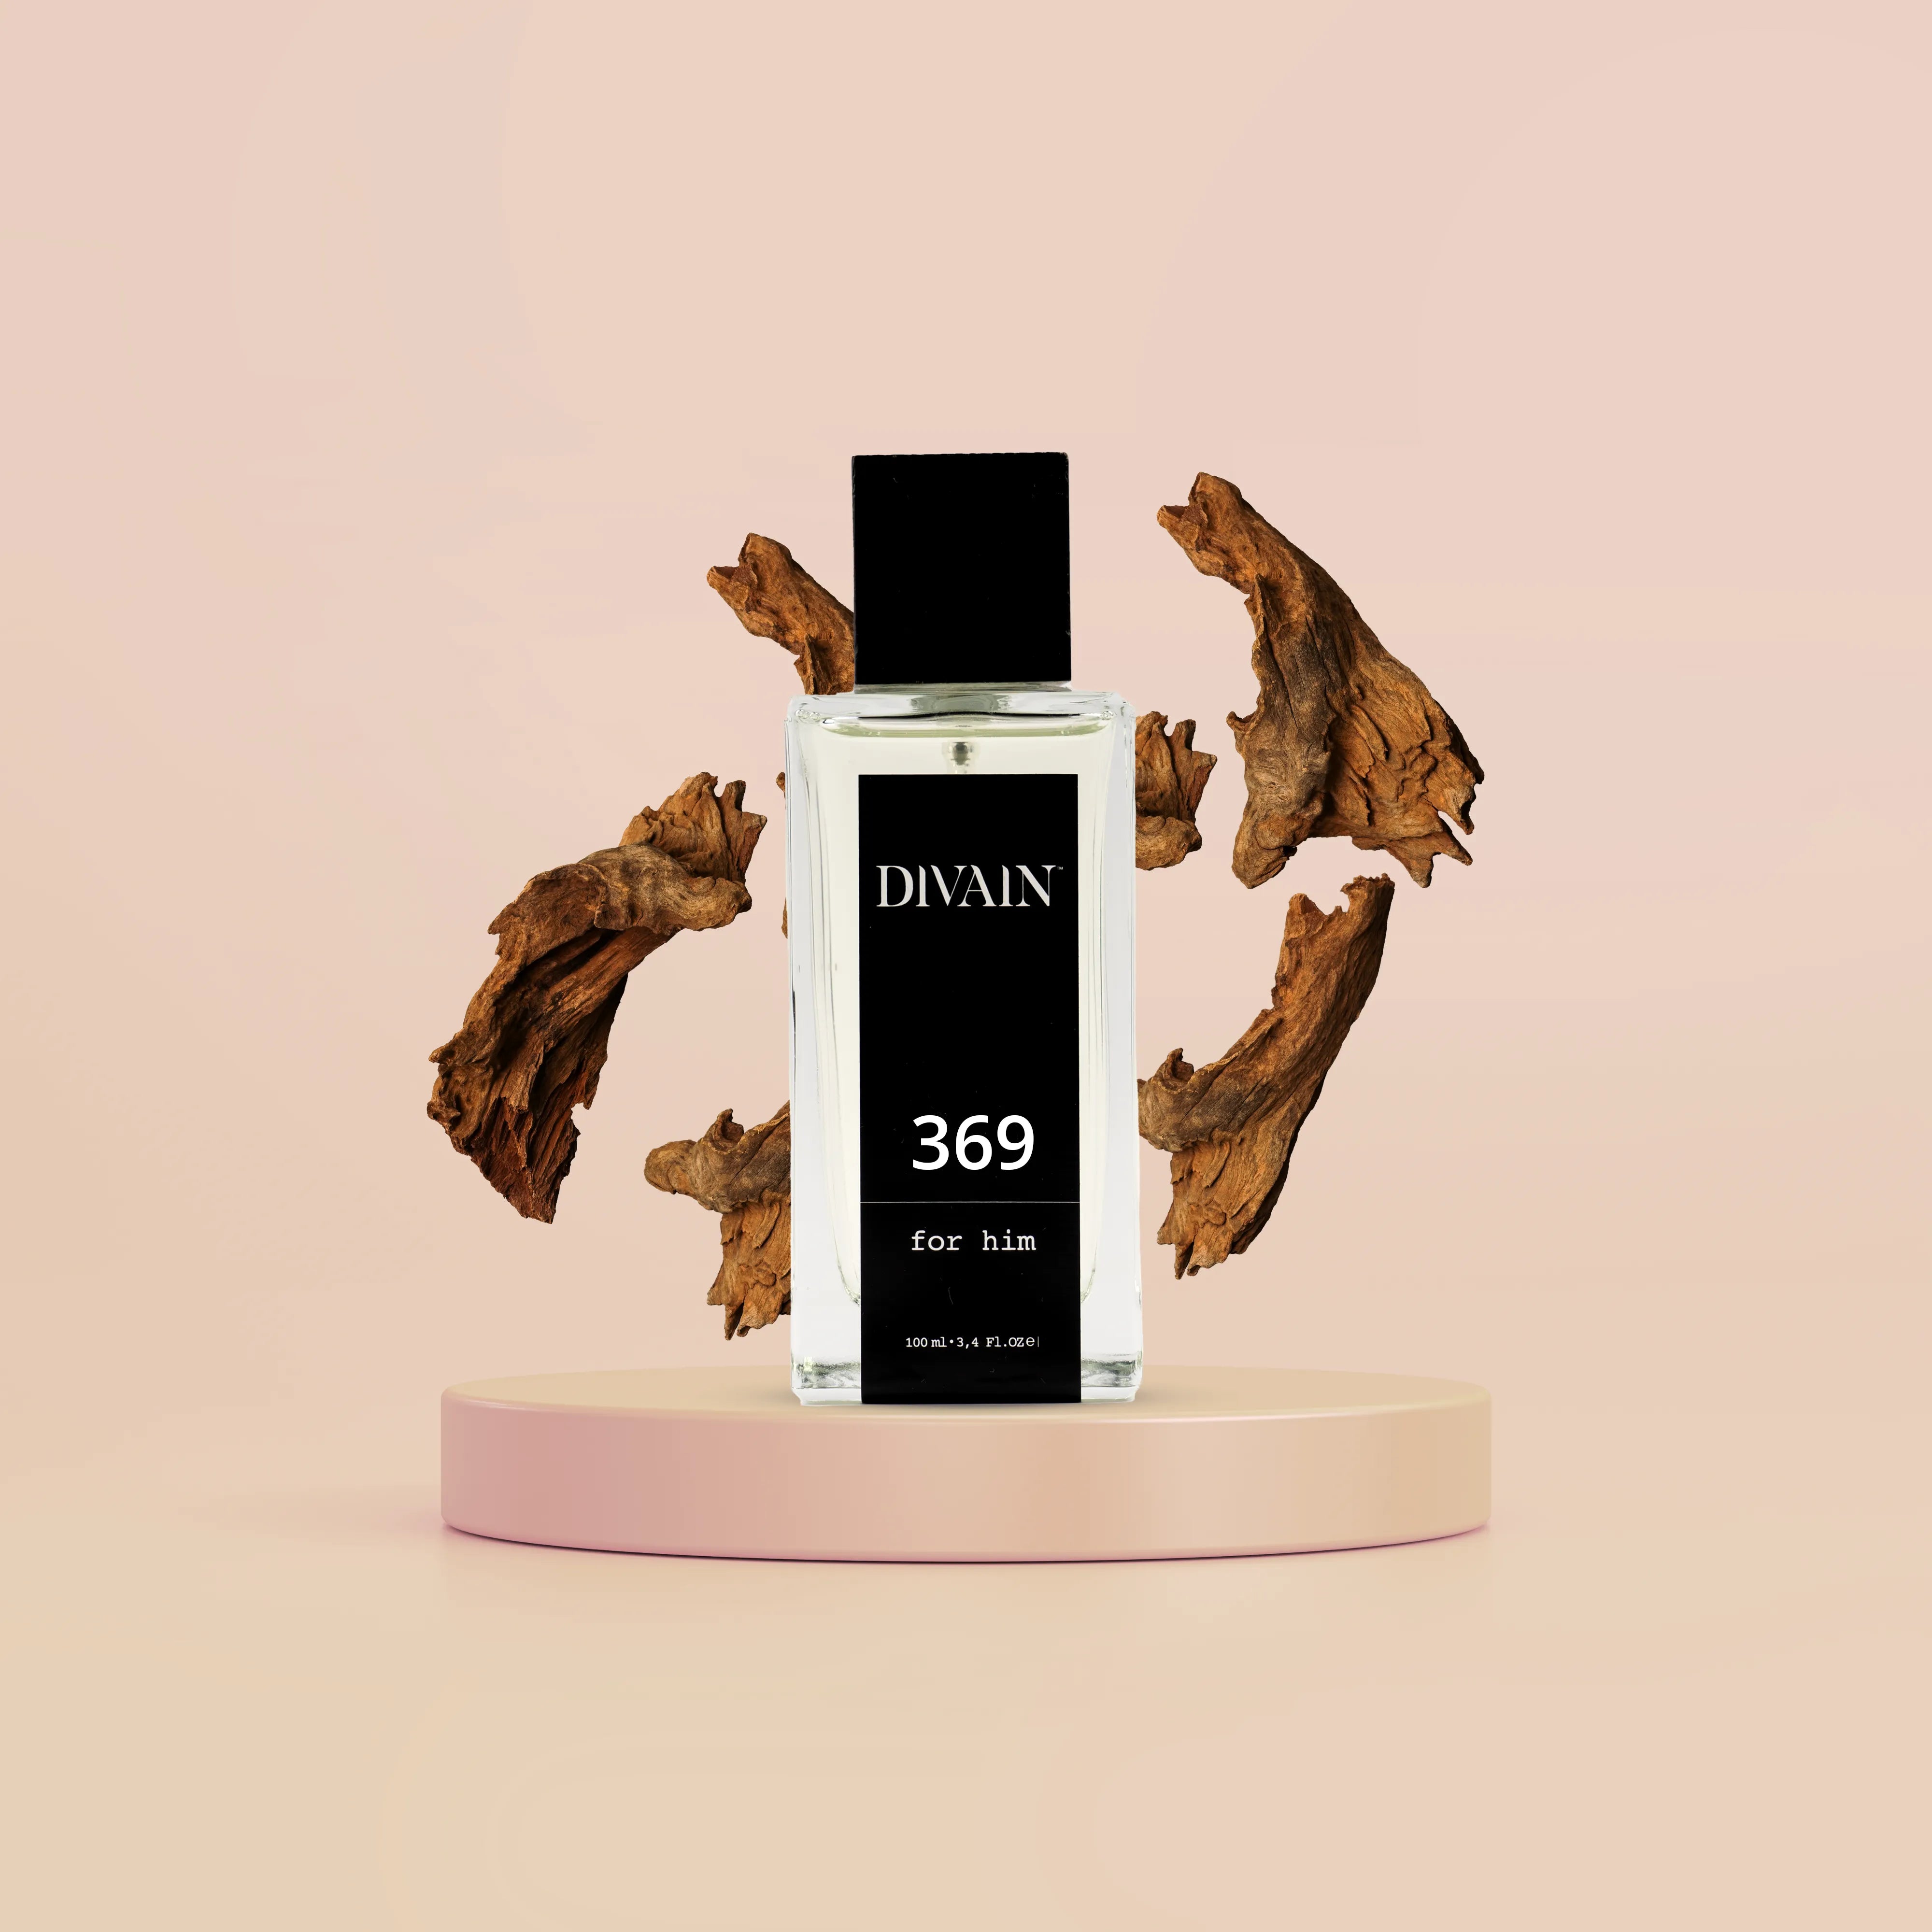 DIVAIN-369 | Similar a Sauvage Elixir de Dior | Hombre